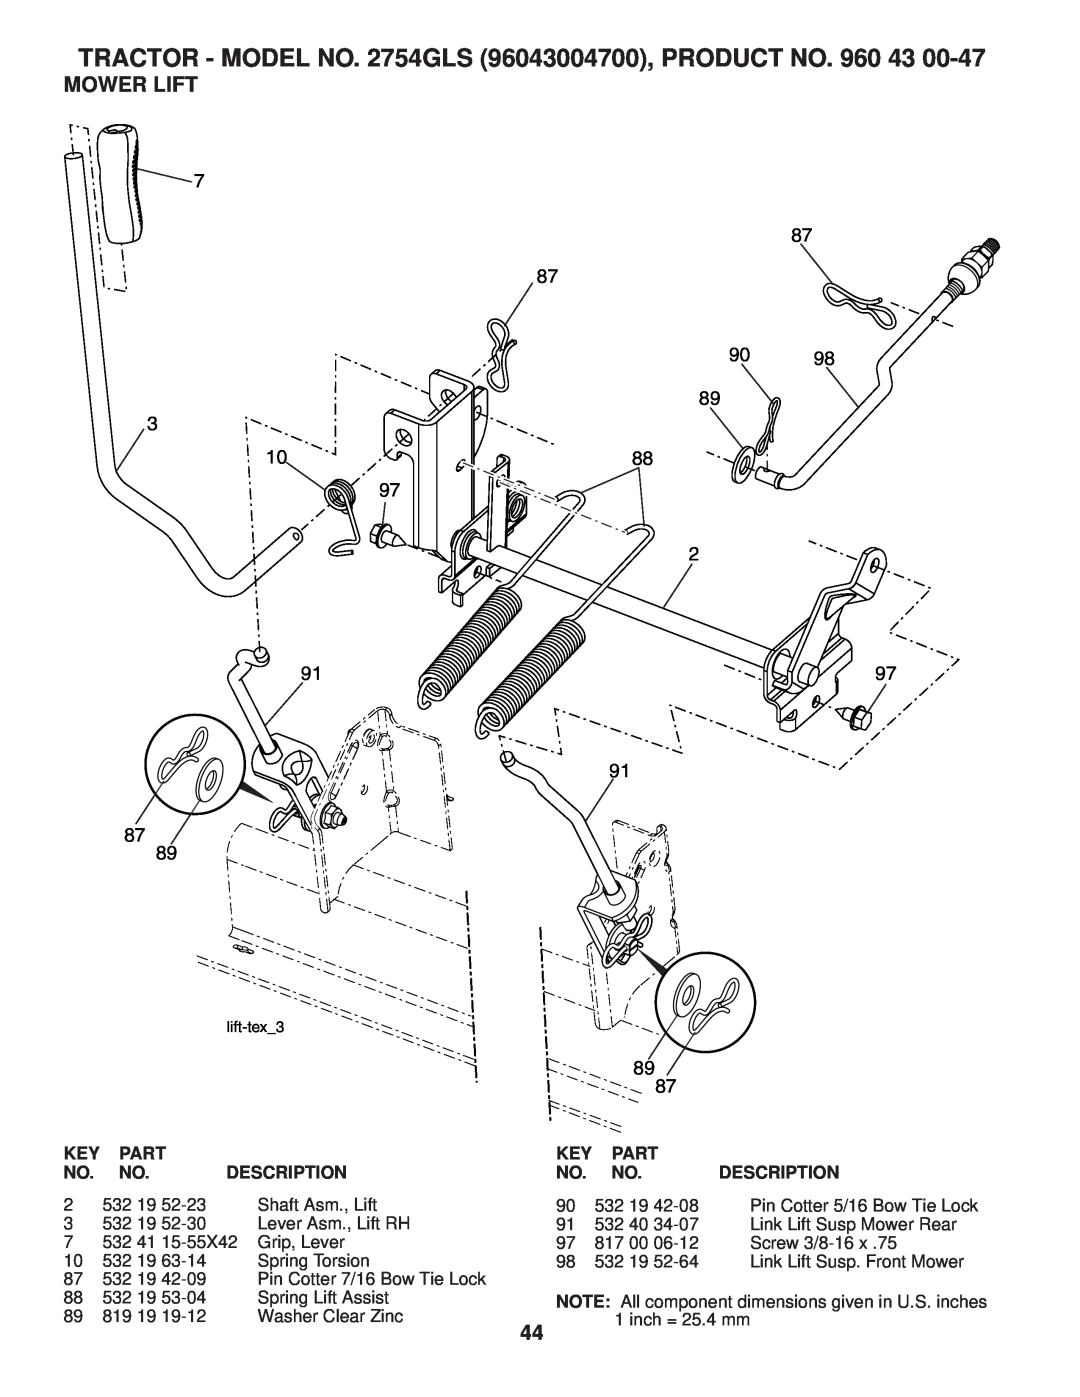 Husqvarna 2754 GLS manual Mower Lift, TRACTOR - MODEL NO. 2754GLS 96043004700, PRODUCT NO. 960 43, Part, Description 